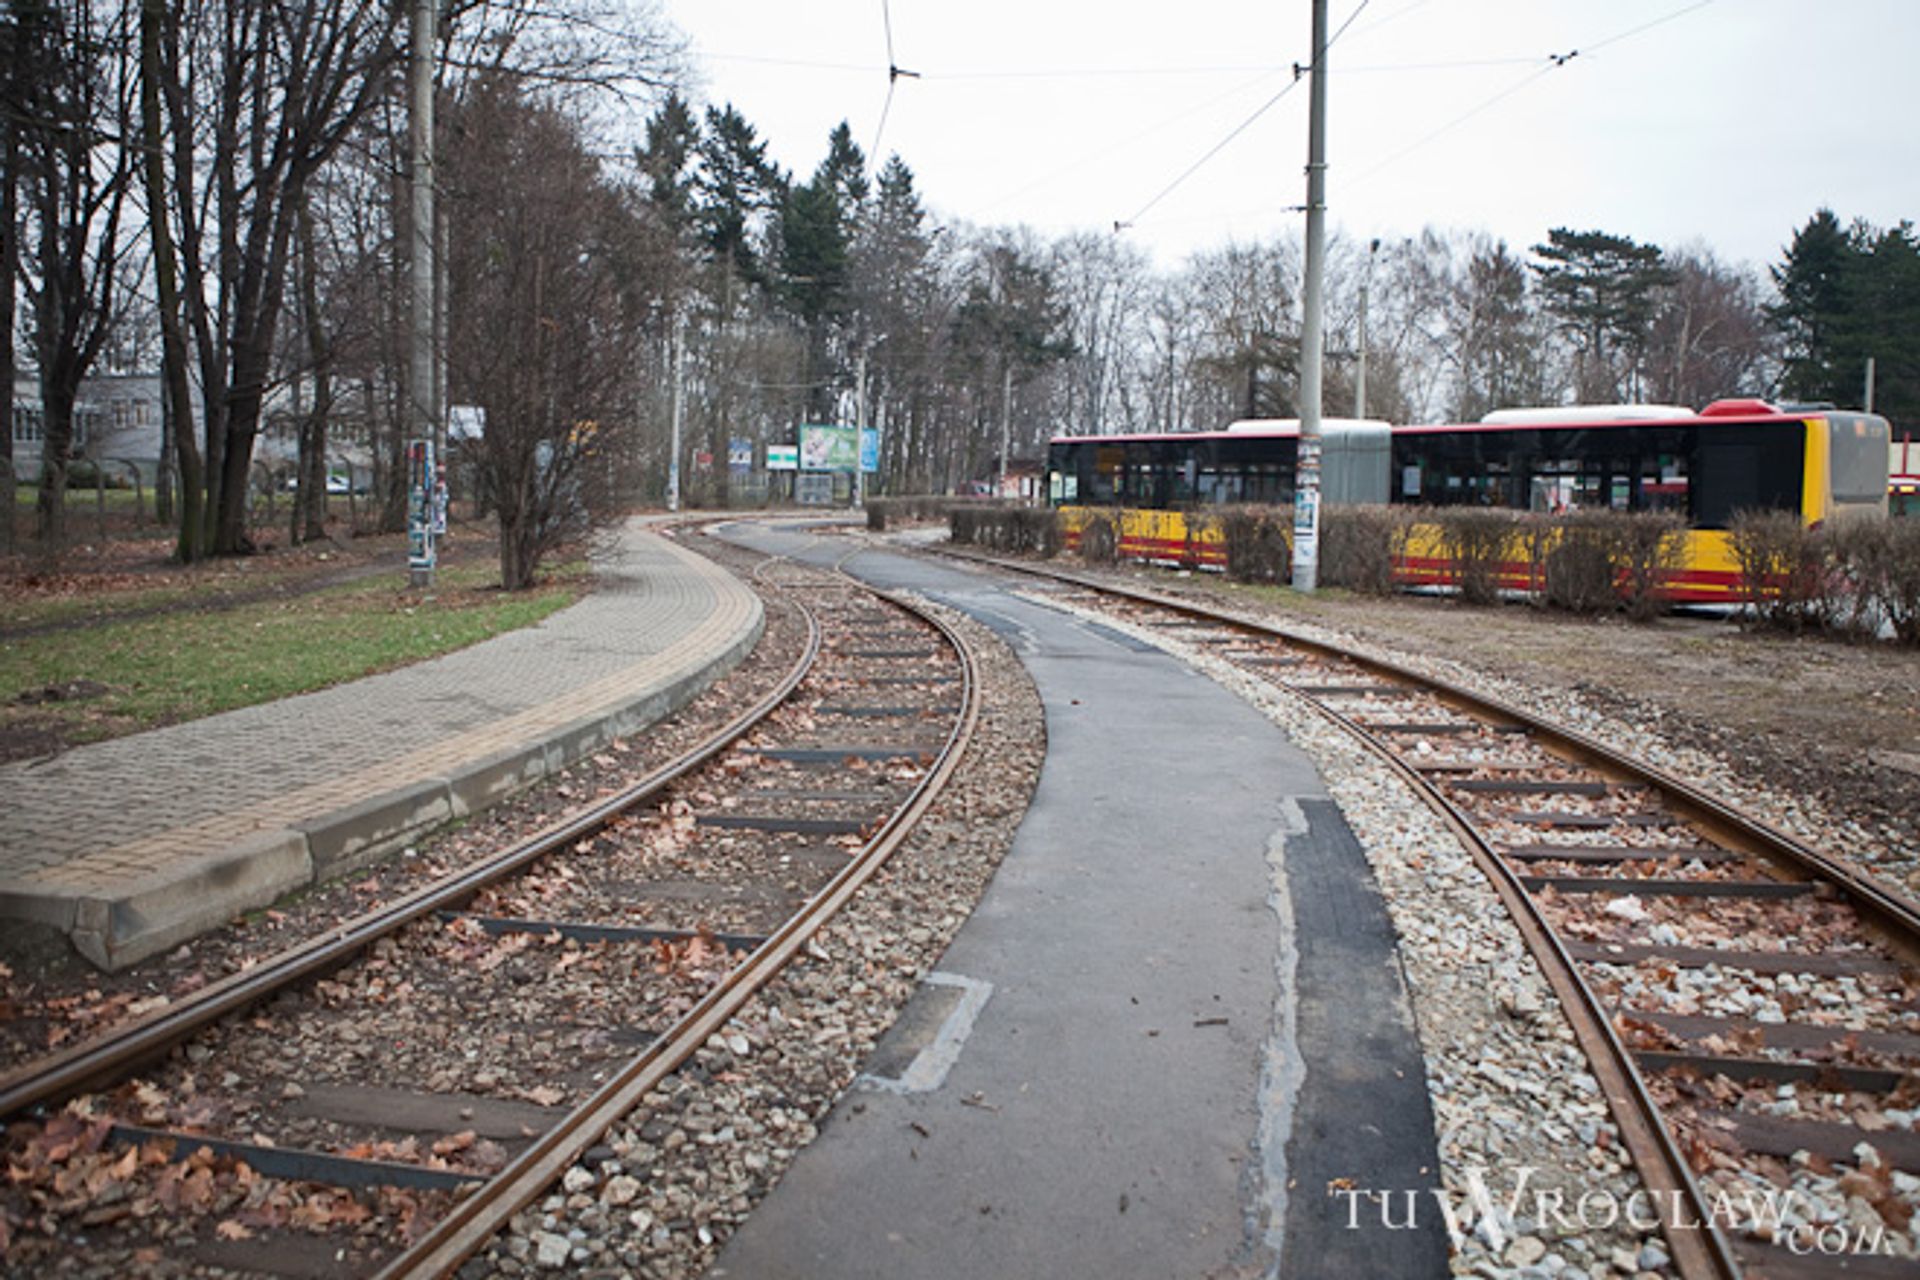  Po remoncie torowiska tramwaje wreszcie wracają na Sępolno